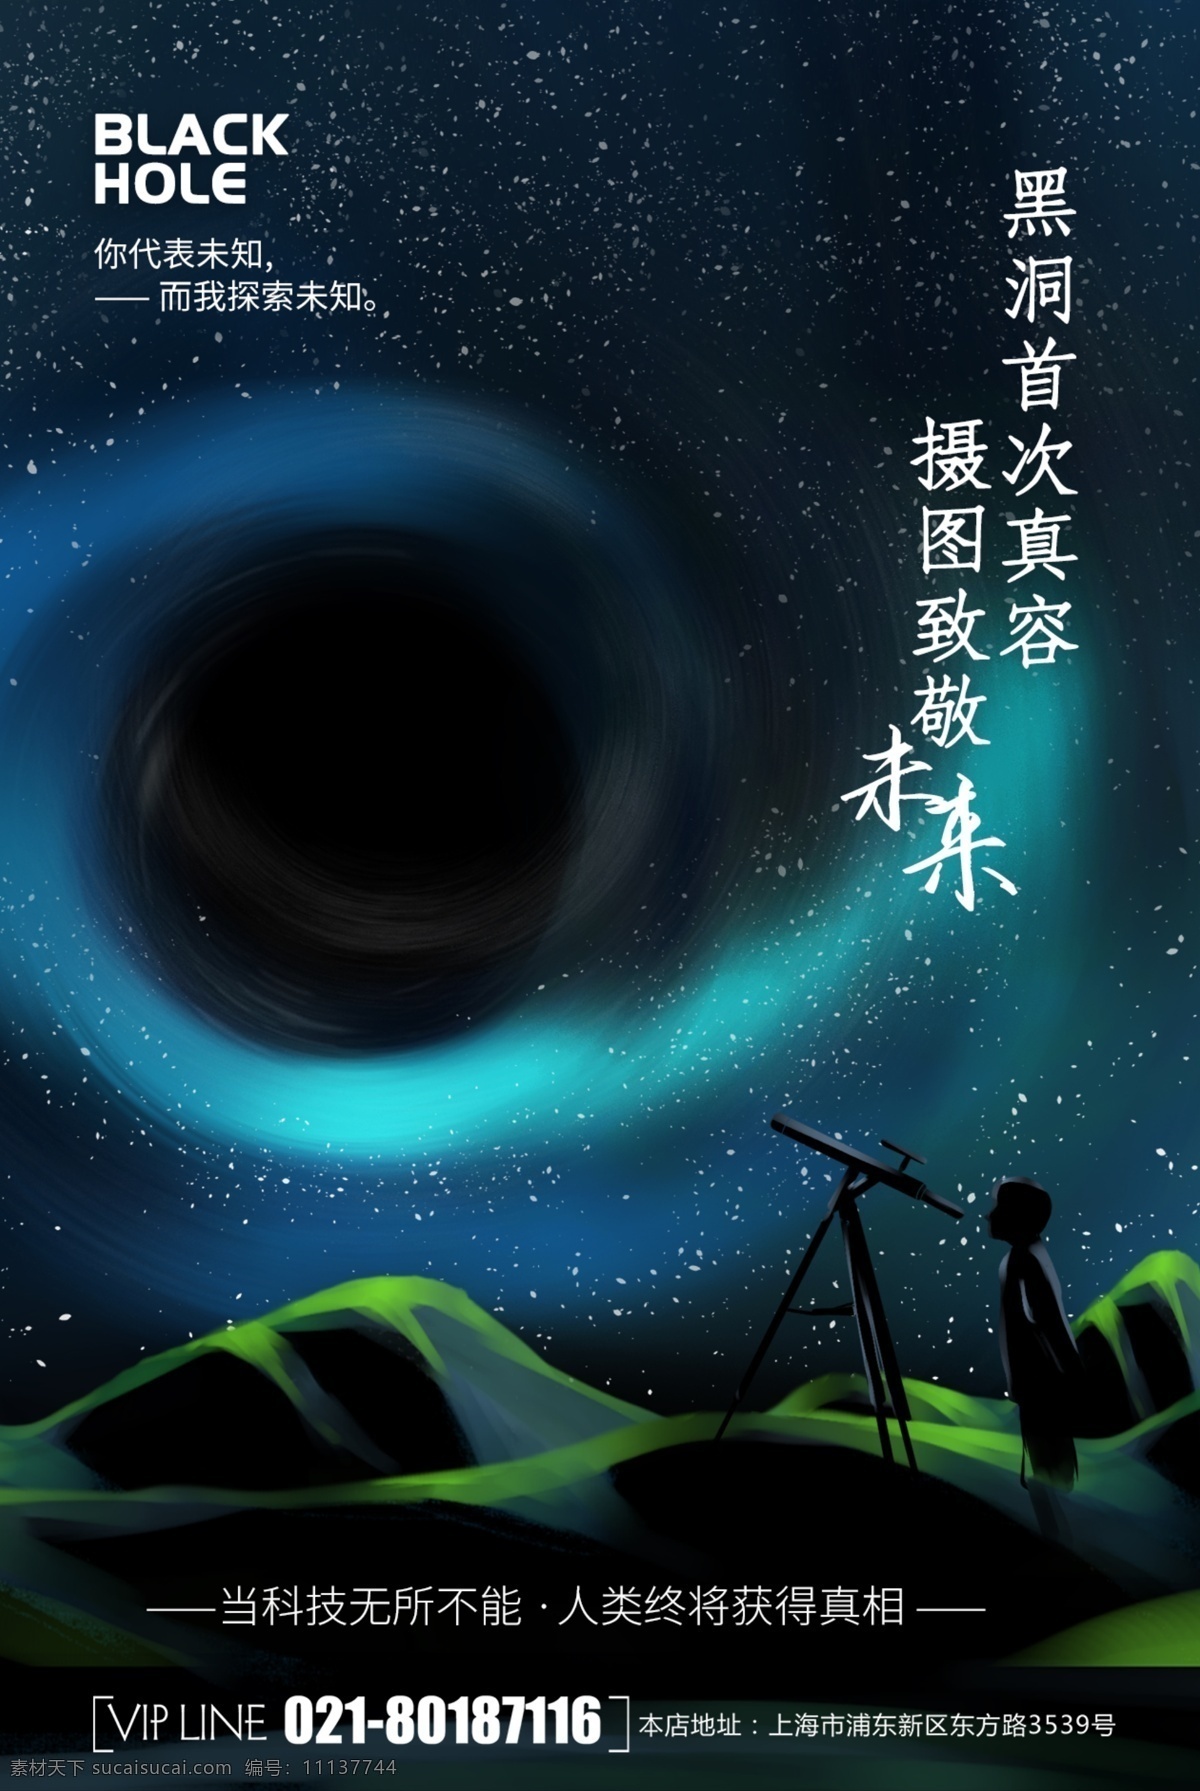 简约 大气 创意 黑洞 外 太空 科技 海报 宇宙 星空 2019 外太空 星云 星星 唯美 星球 遨游 科幻 神秘 未来